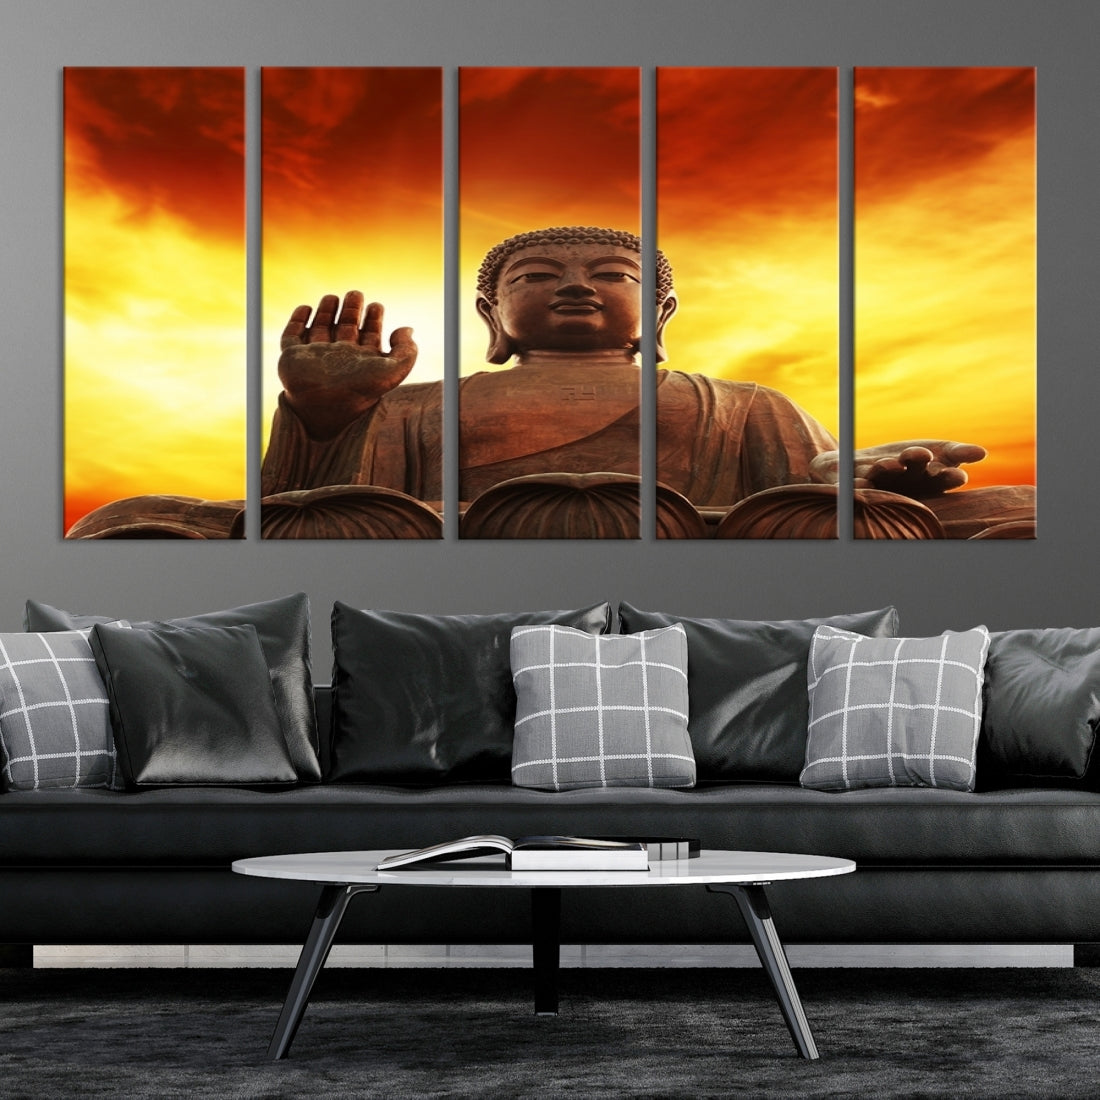 Large Wall Art Close up Buddha Statue at Sunset Canvas Print